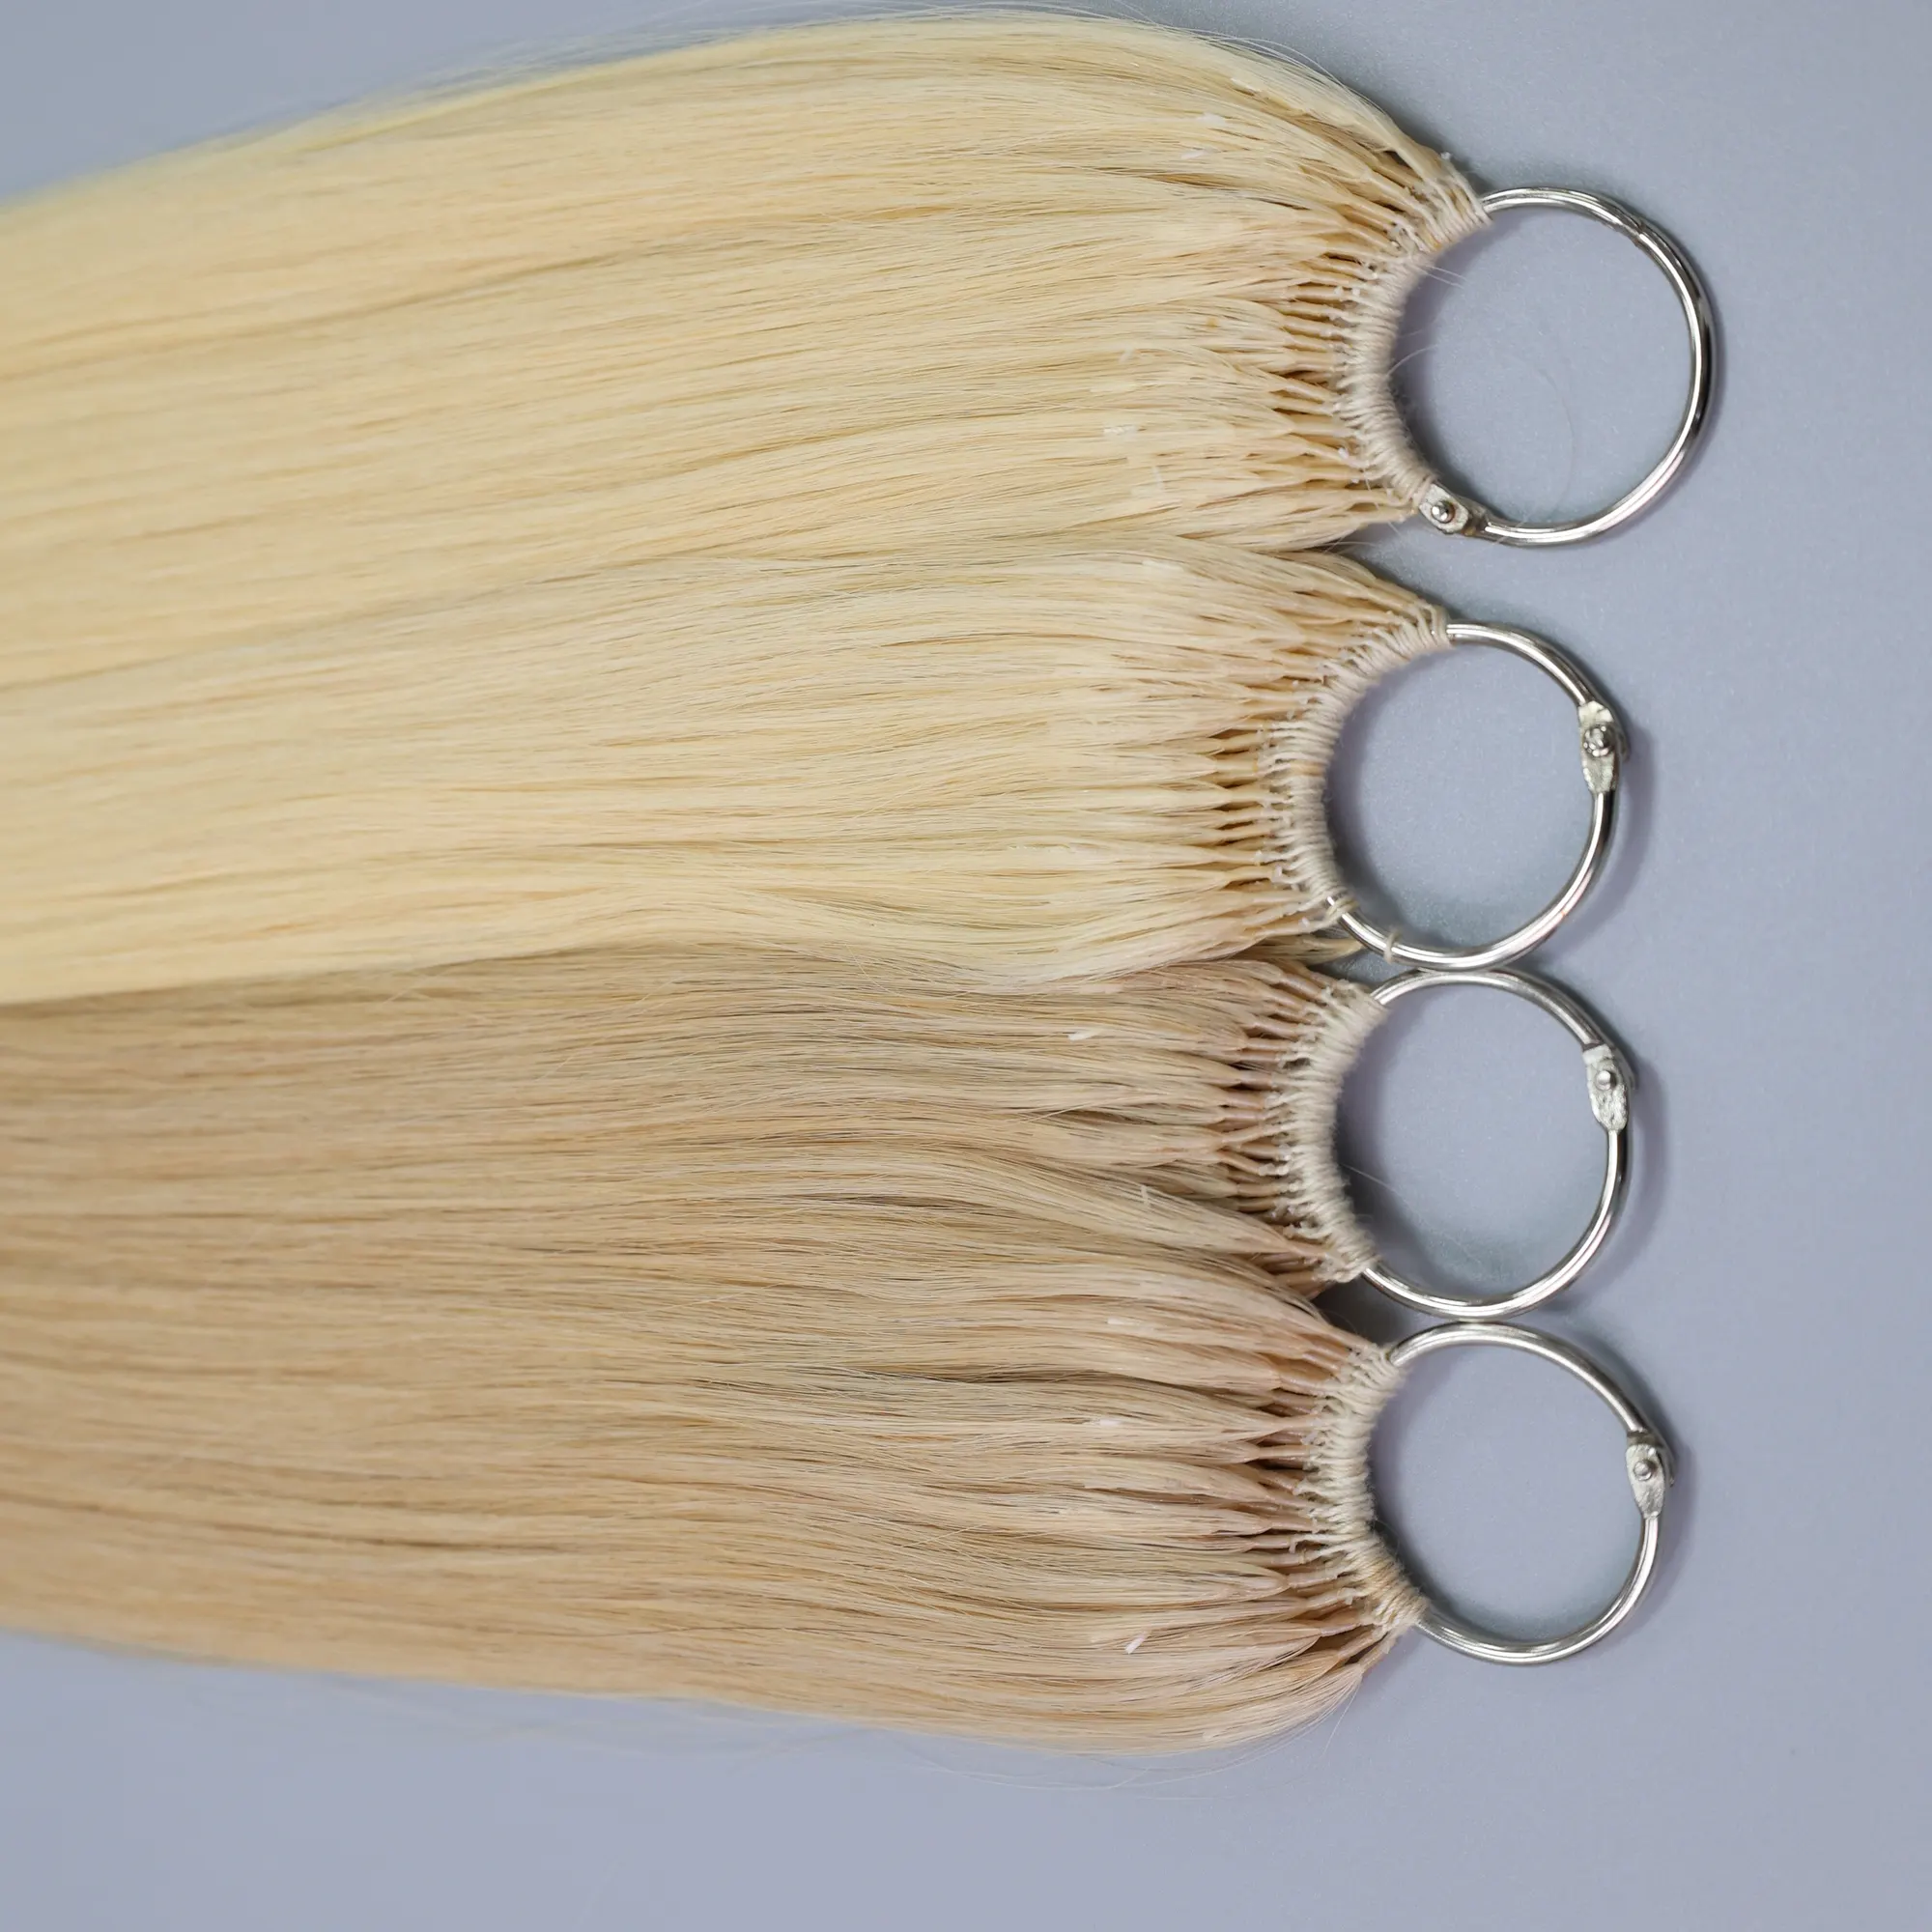 थोक उच्च गुणवत्ता वाले वियतनामी मानव बाल पंख कपड़ा एक्सटेंशन सुनहरे बालों का रंग सीधी बनावट सर्वोत्तम मूल्य पर